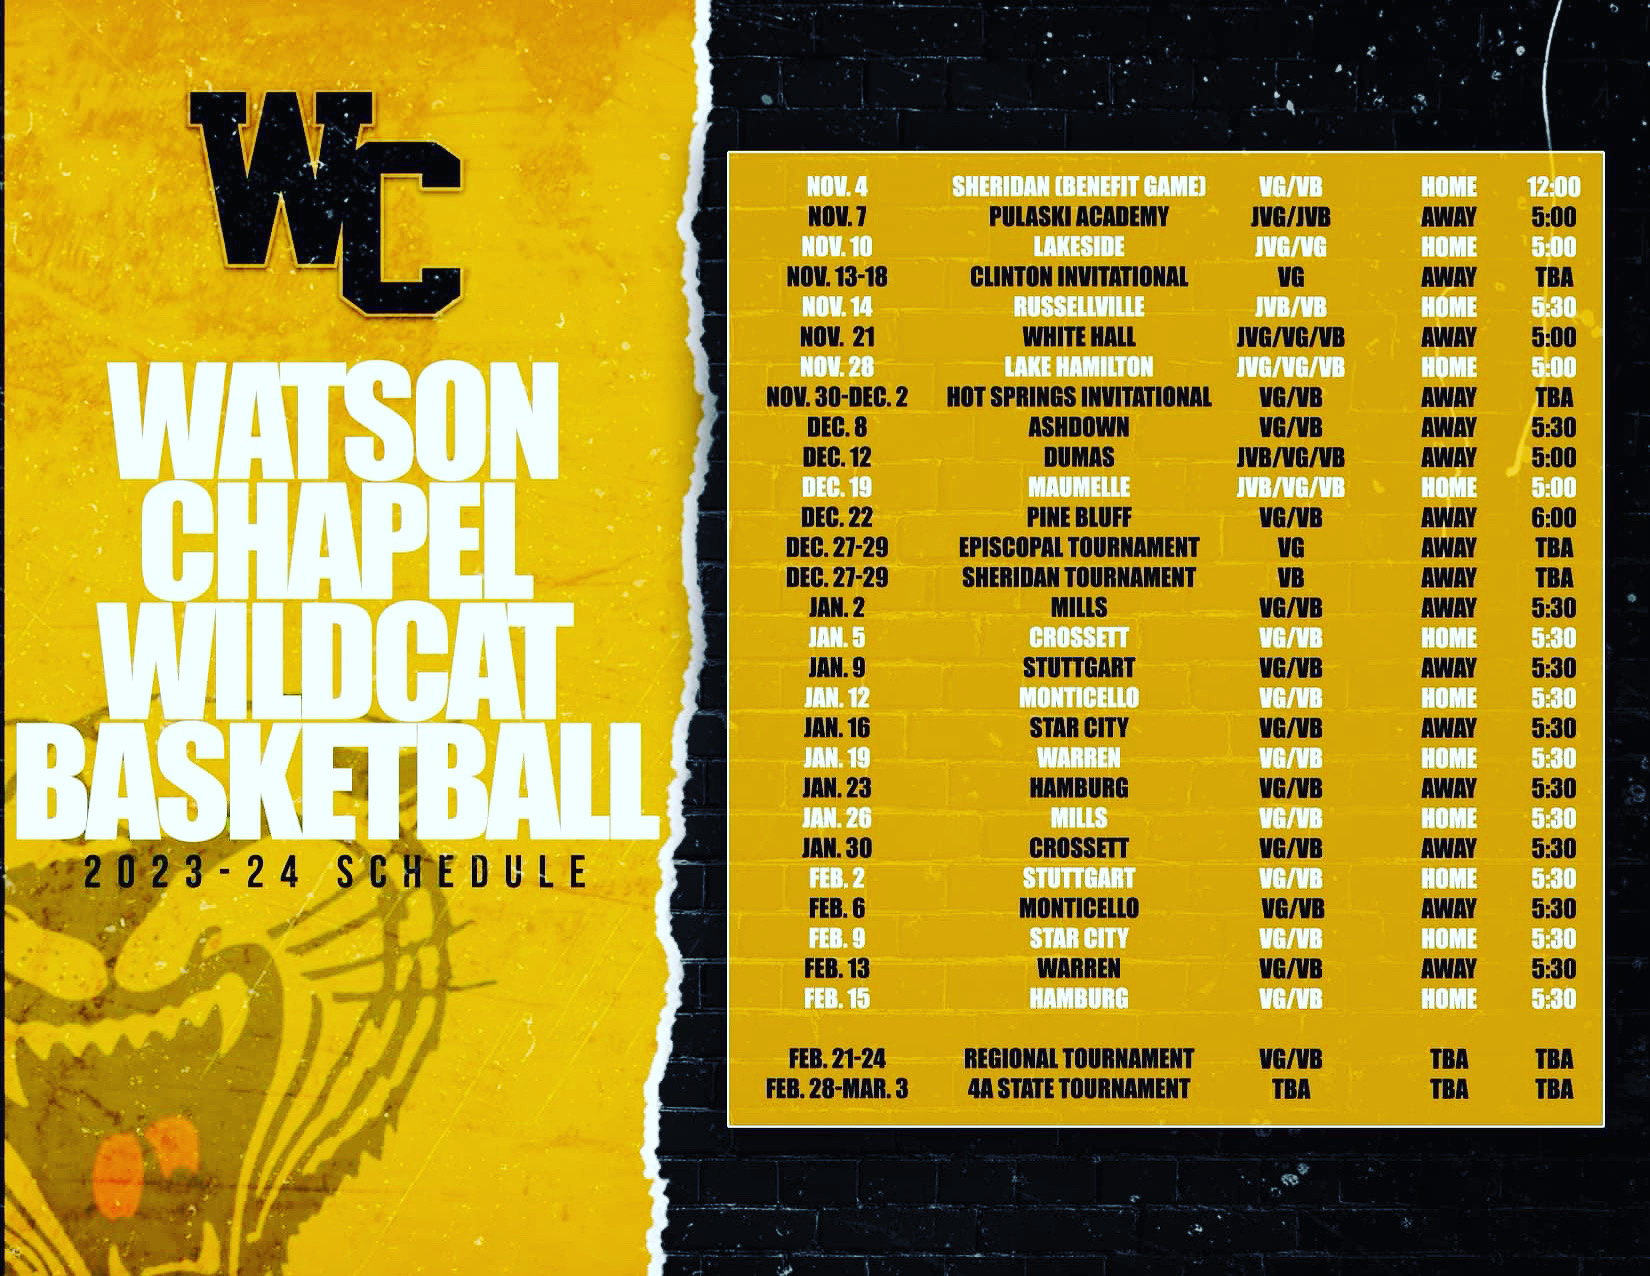 WCHS Basketball Schedule 23-24